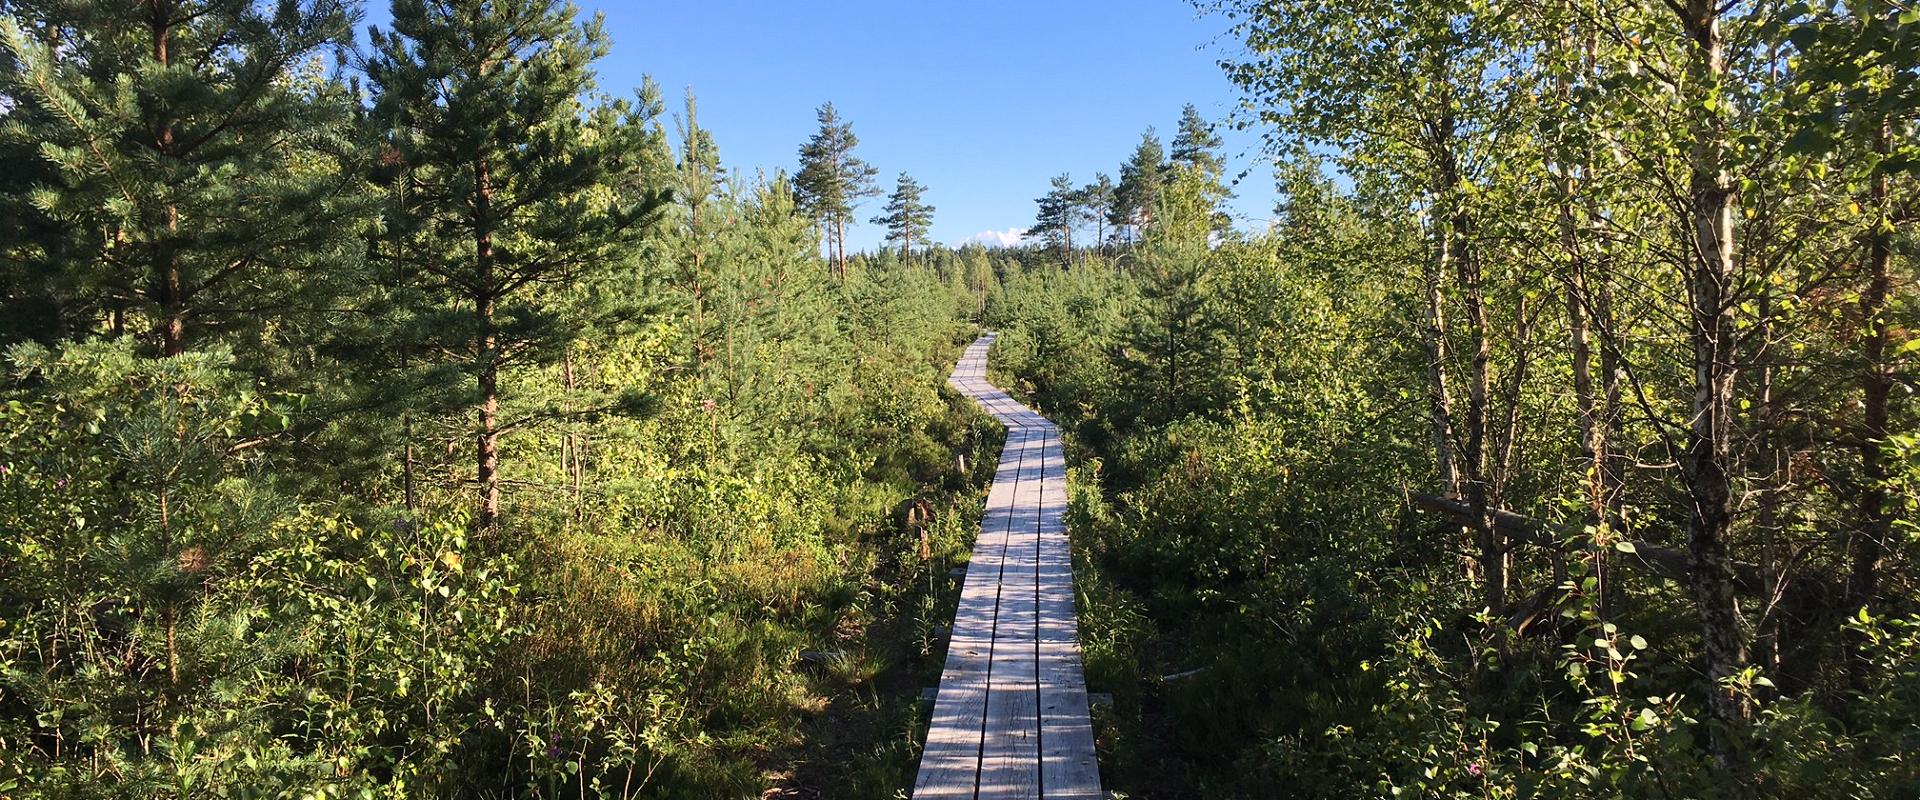 Das Naturschutzgebiet Pääsküla liegt wohl innerhalb der Stadtgrenzen, aber Wildheit wird dort genug geboten. Ein Besuch des Pääsküla-Hochmoores ist ei